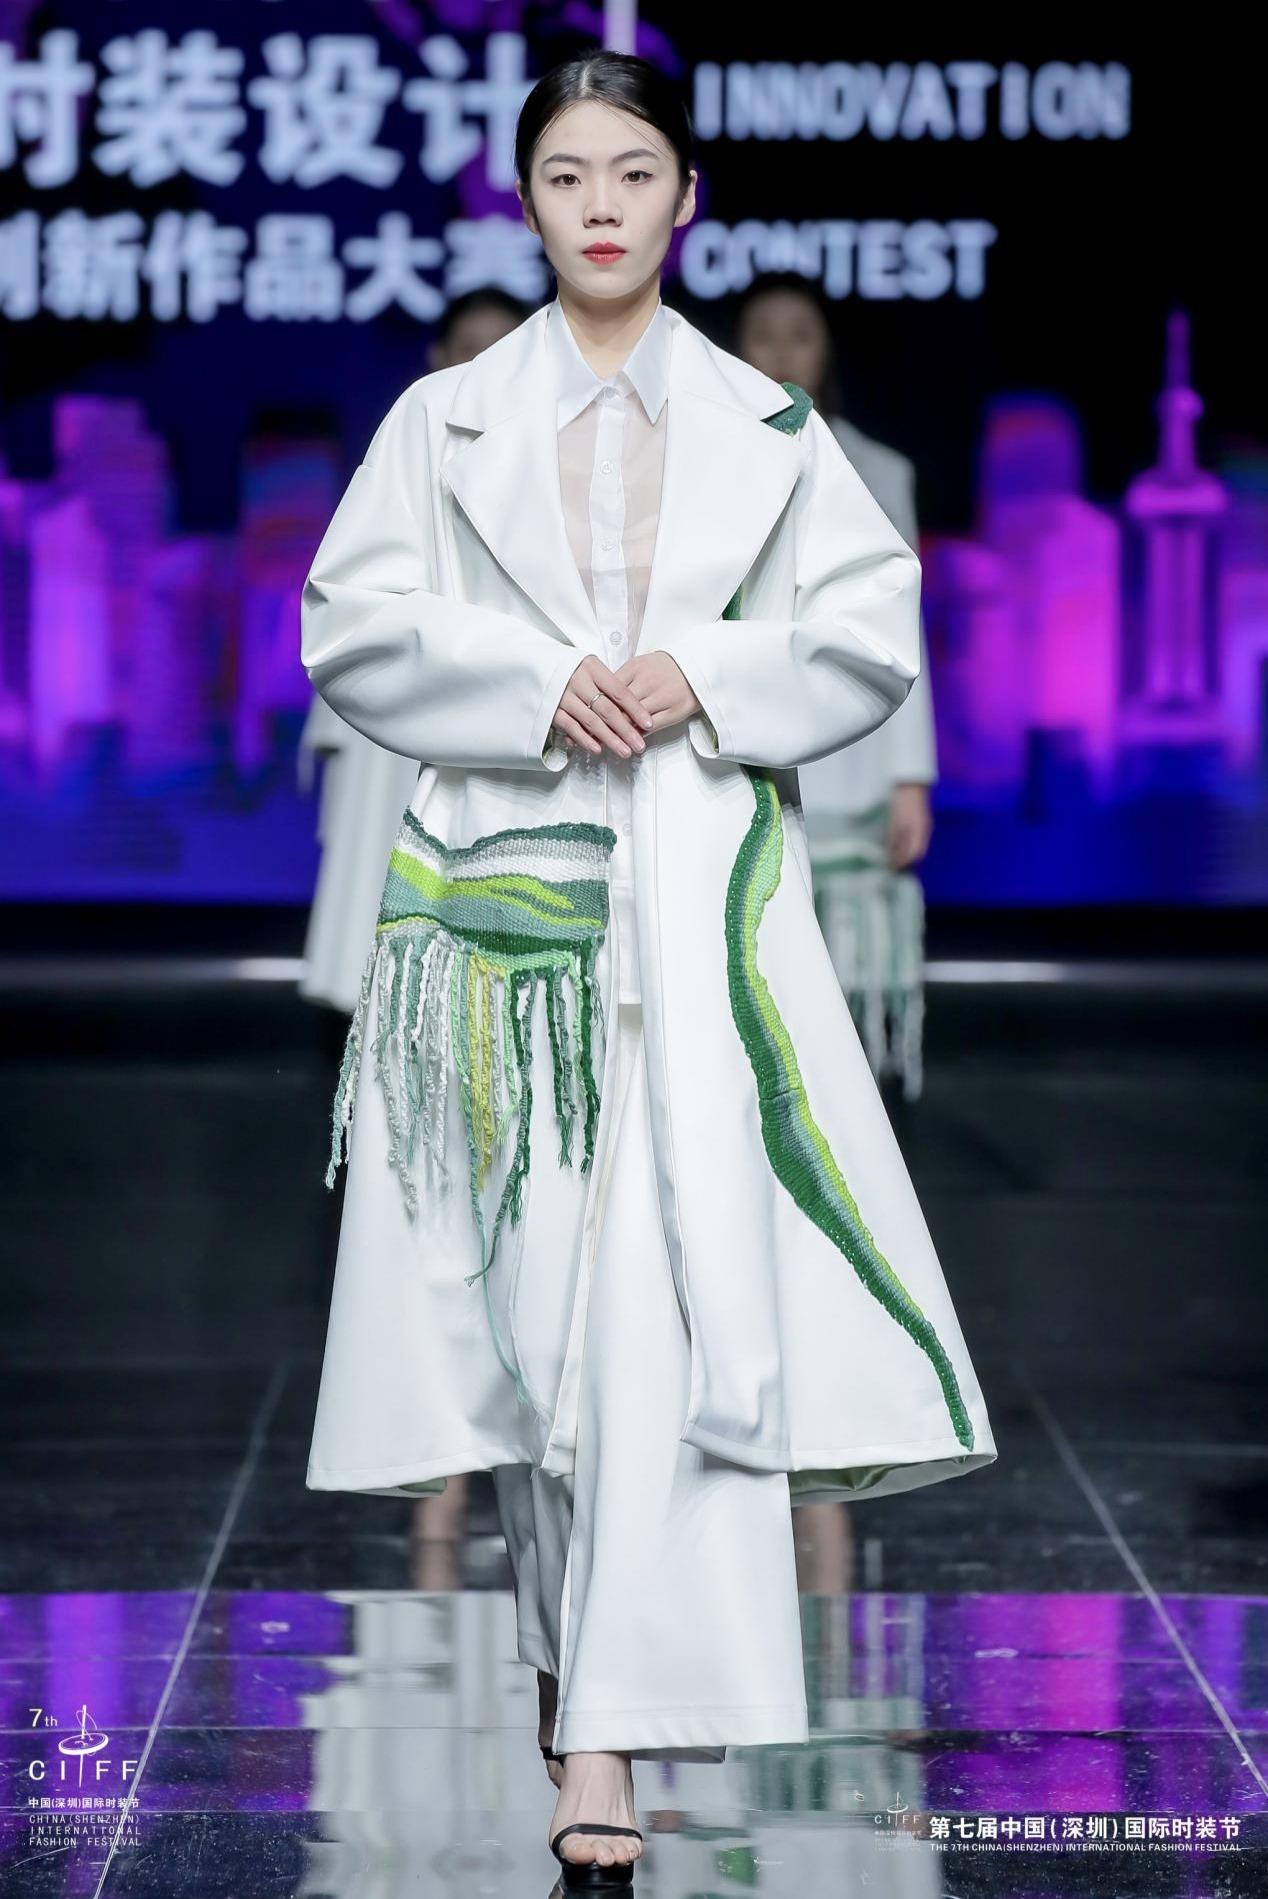 第六届中国国际时装设计创新作品大赛在深上演